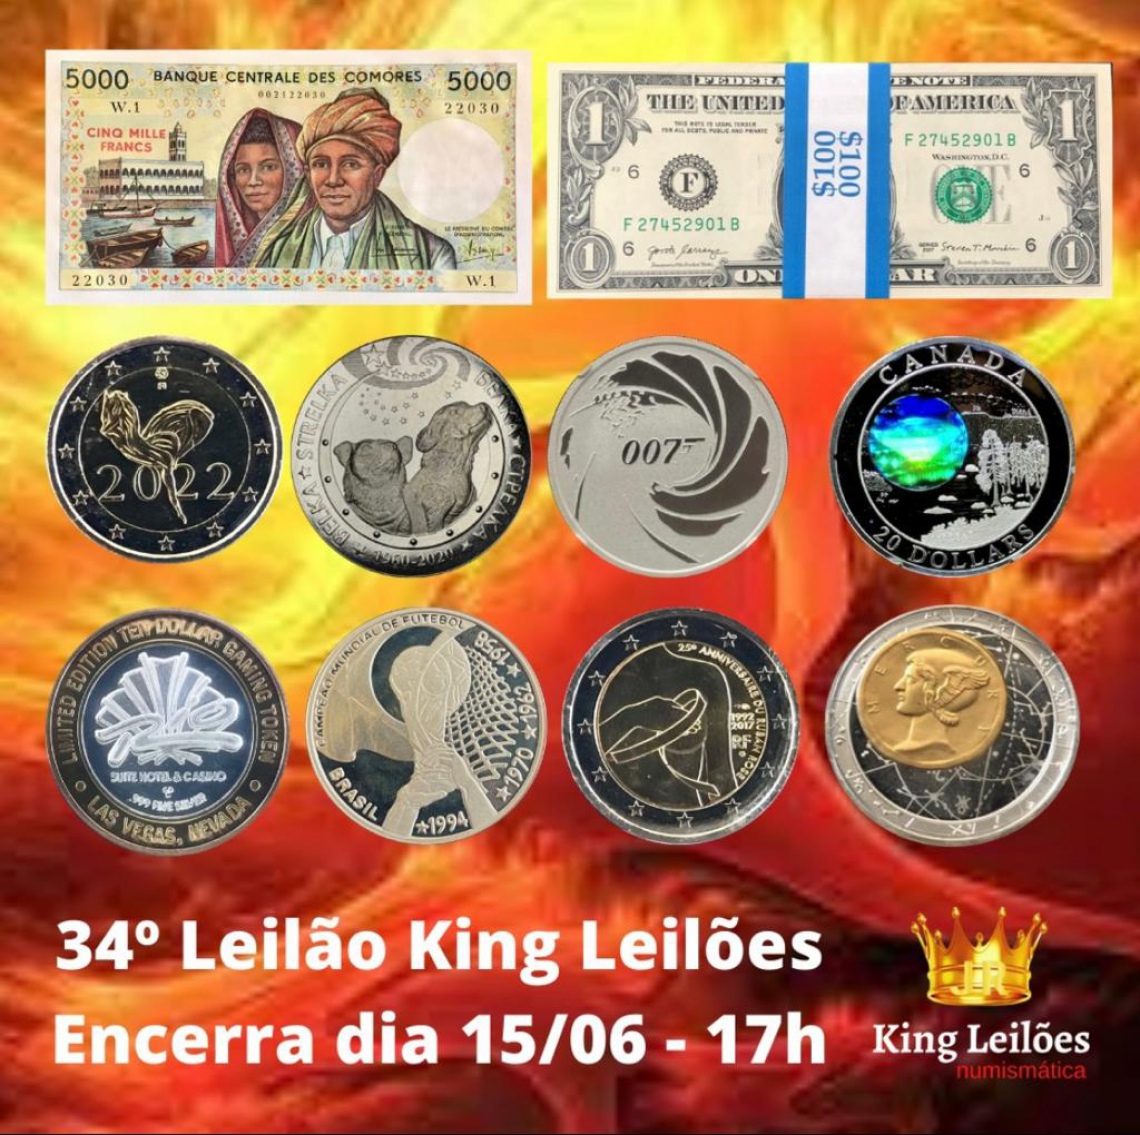 34º LEILÃO KING LEILÕES DE NUMISMÁTICA, MULTICOLECIONISMO E ANTIGUIDADES